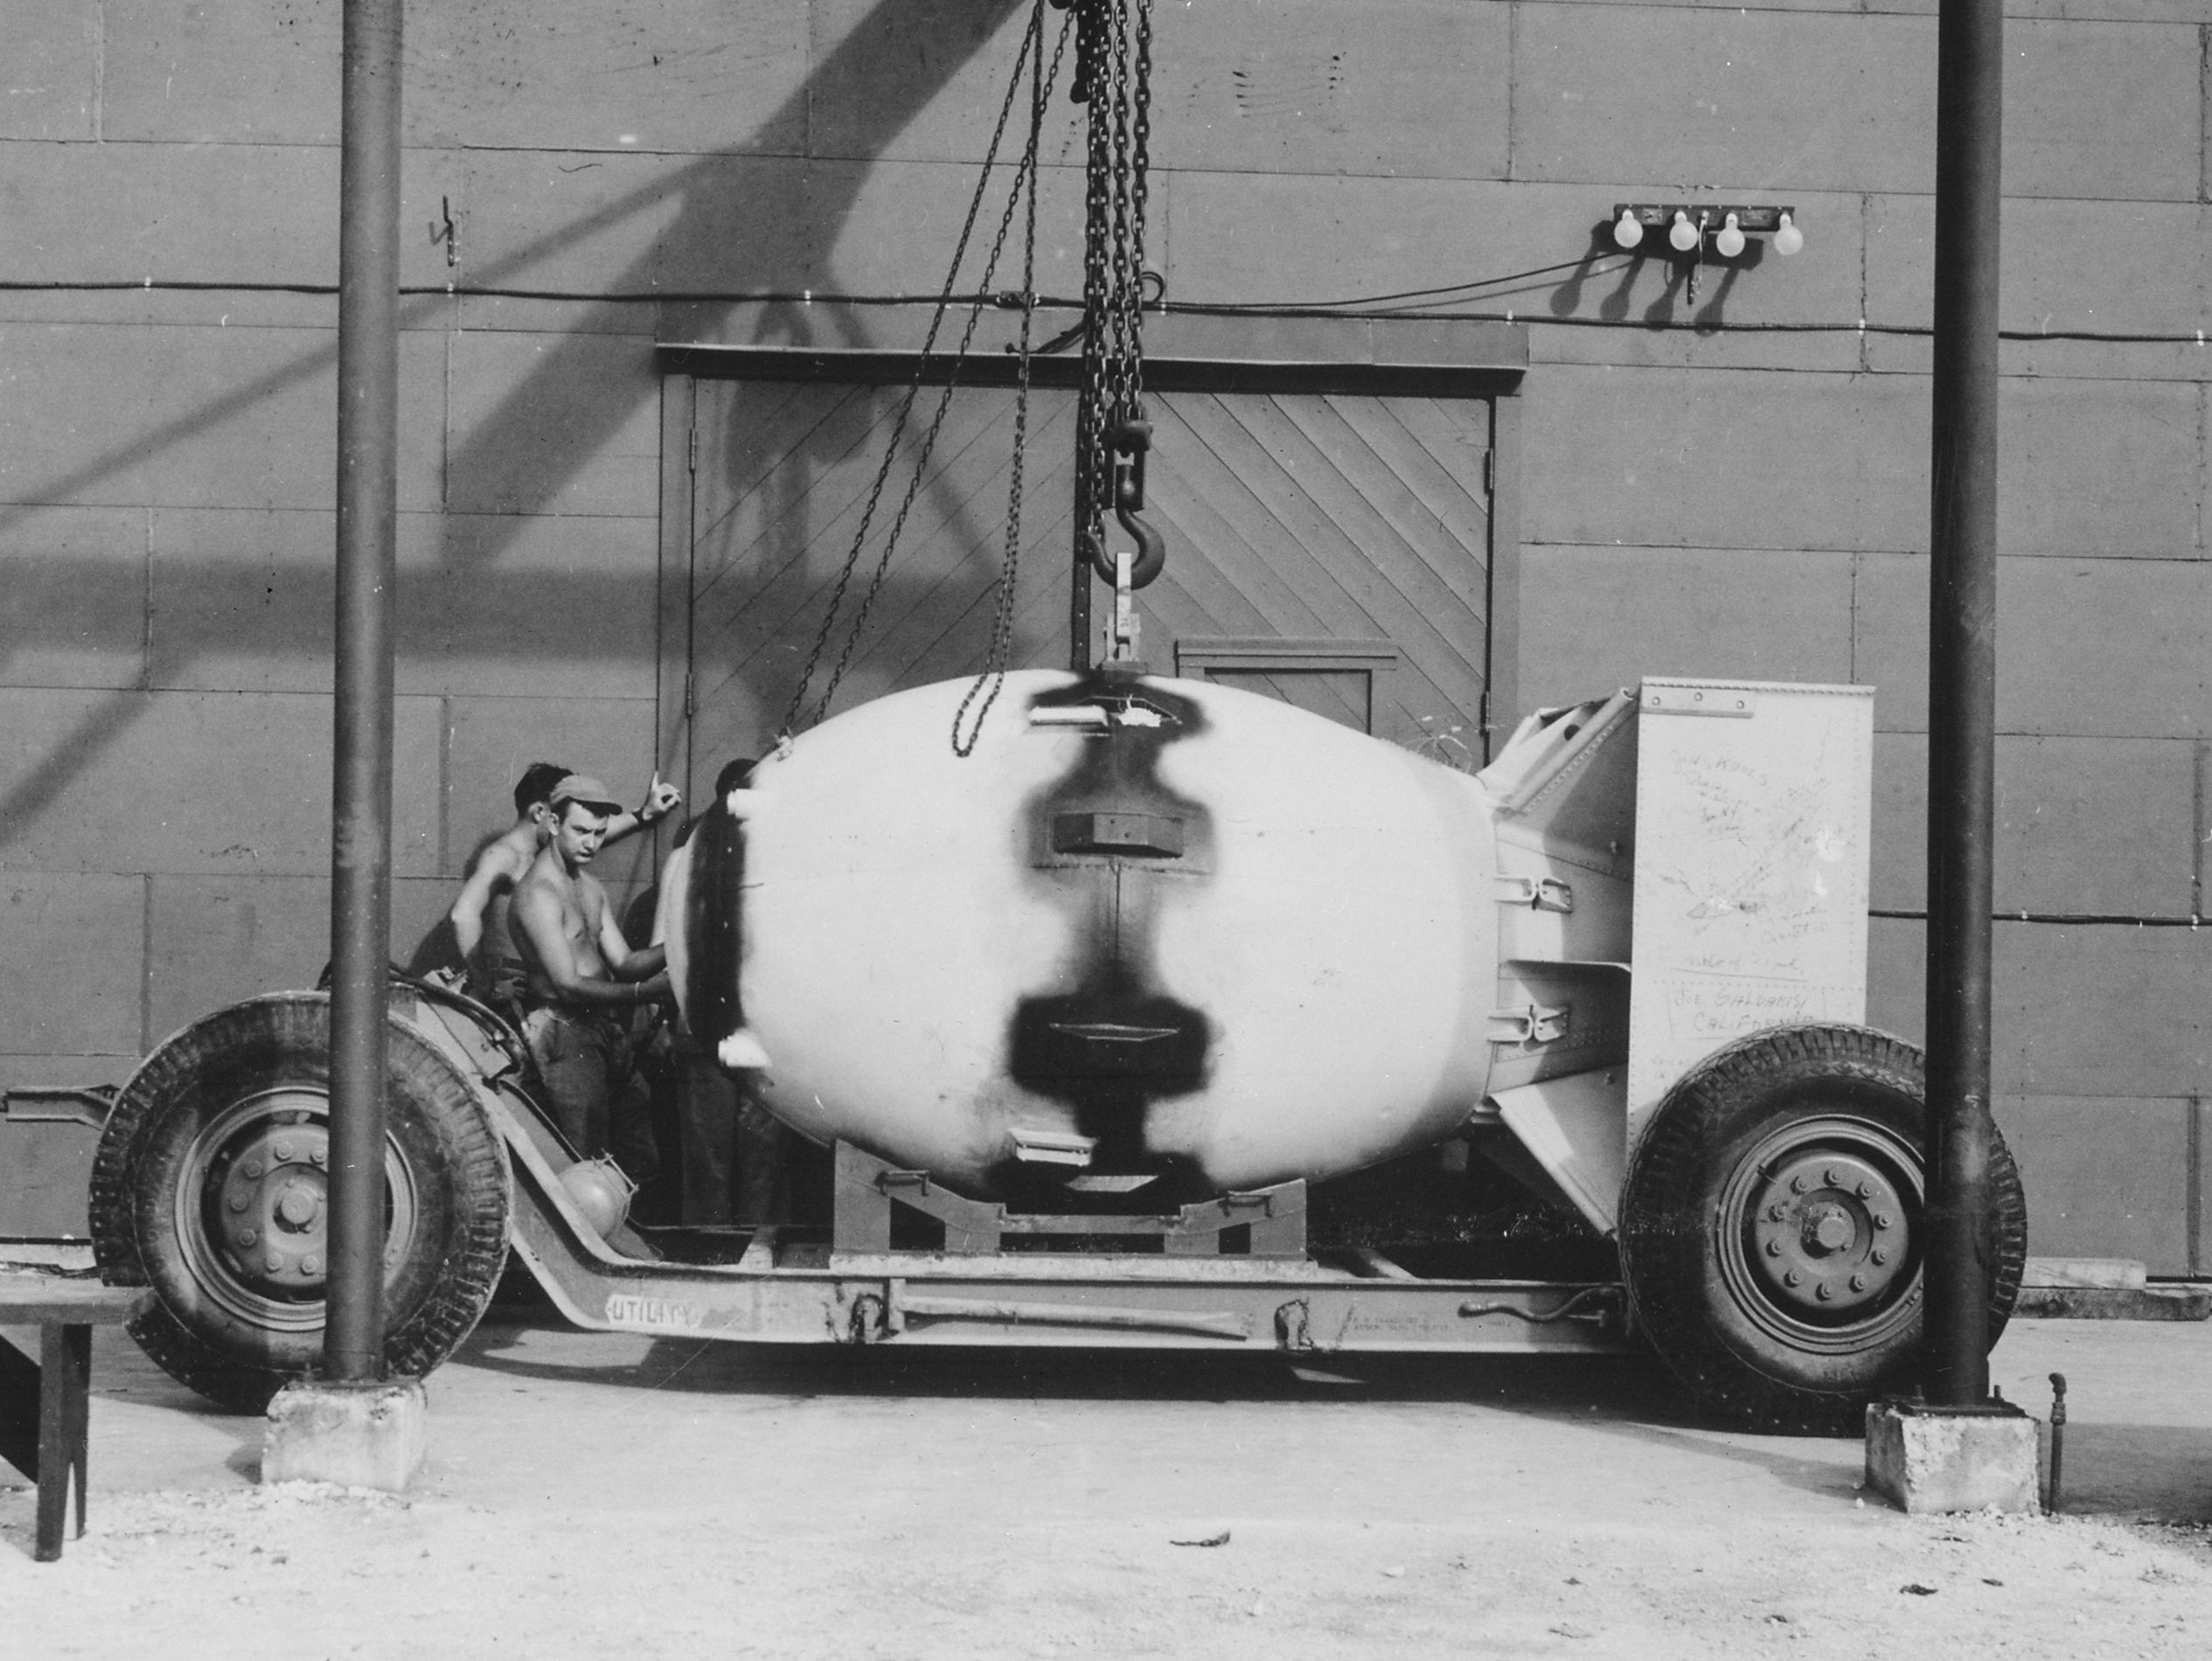 سلاح های هسته ای مدرن مانند بمب هسته ای B83 که توسط ایالات متحده ساخته شده، از فرآیند شکافتی مشابه آنچه در بمب های اتمی به کار گرفته شده استفاده می شود